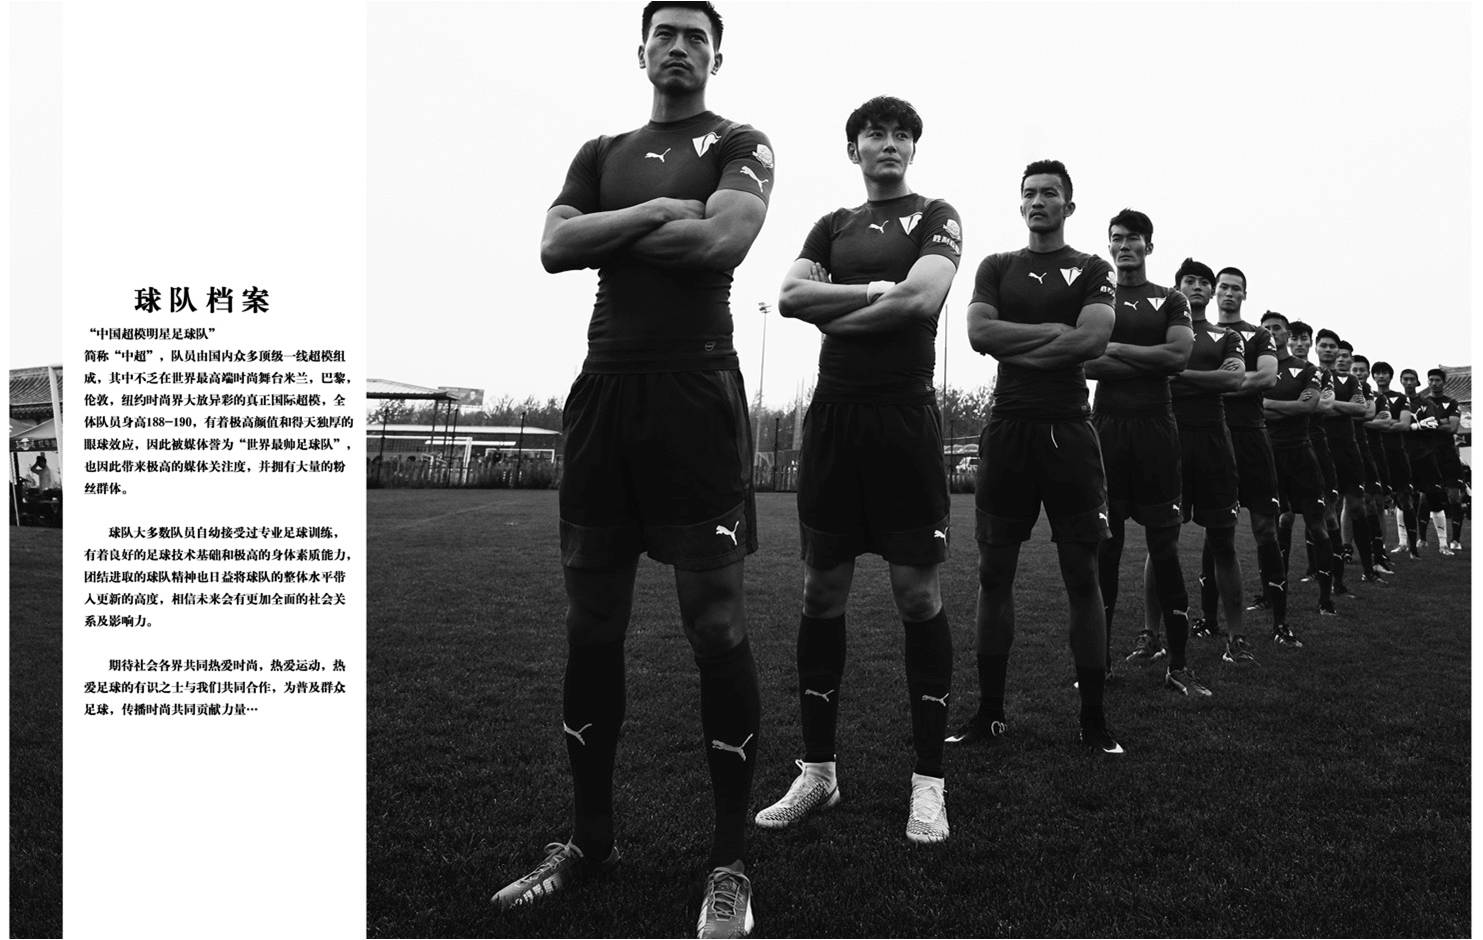 中國超模明星足球隊